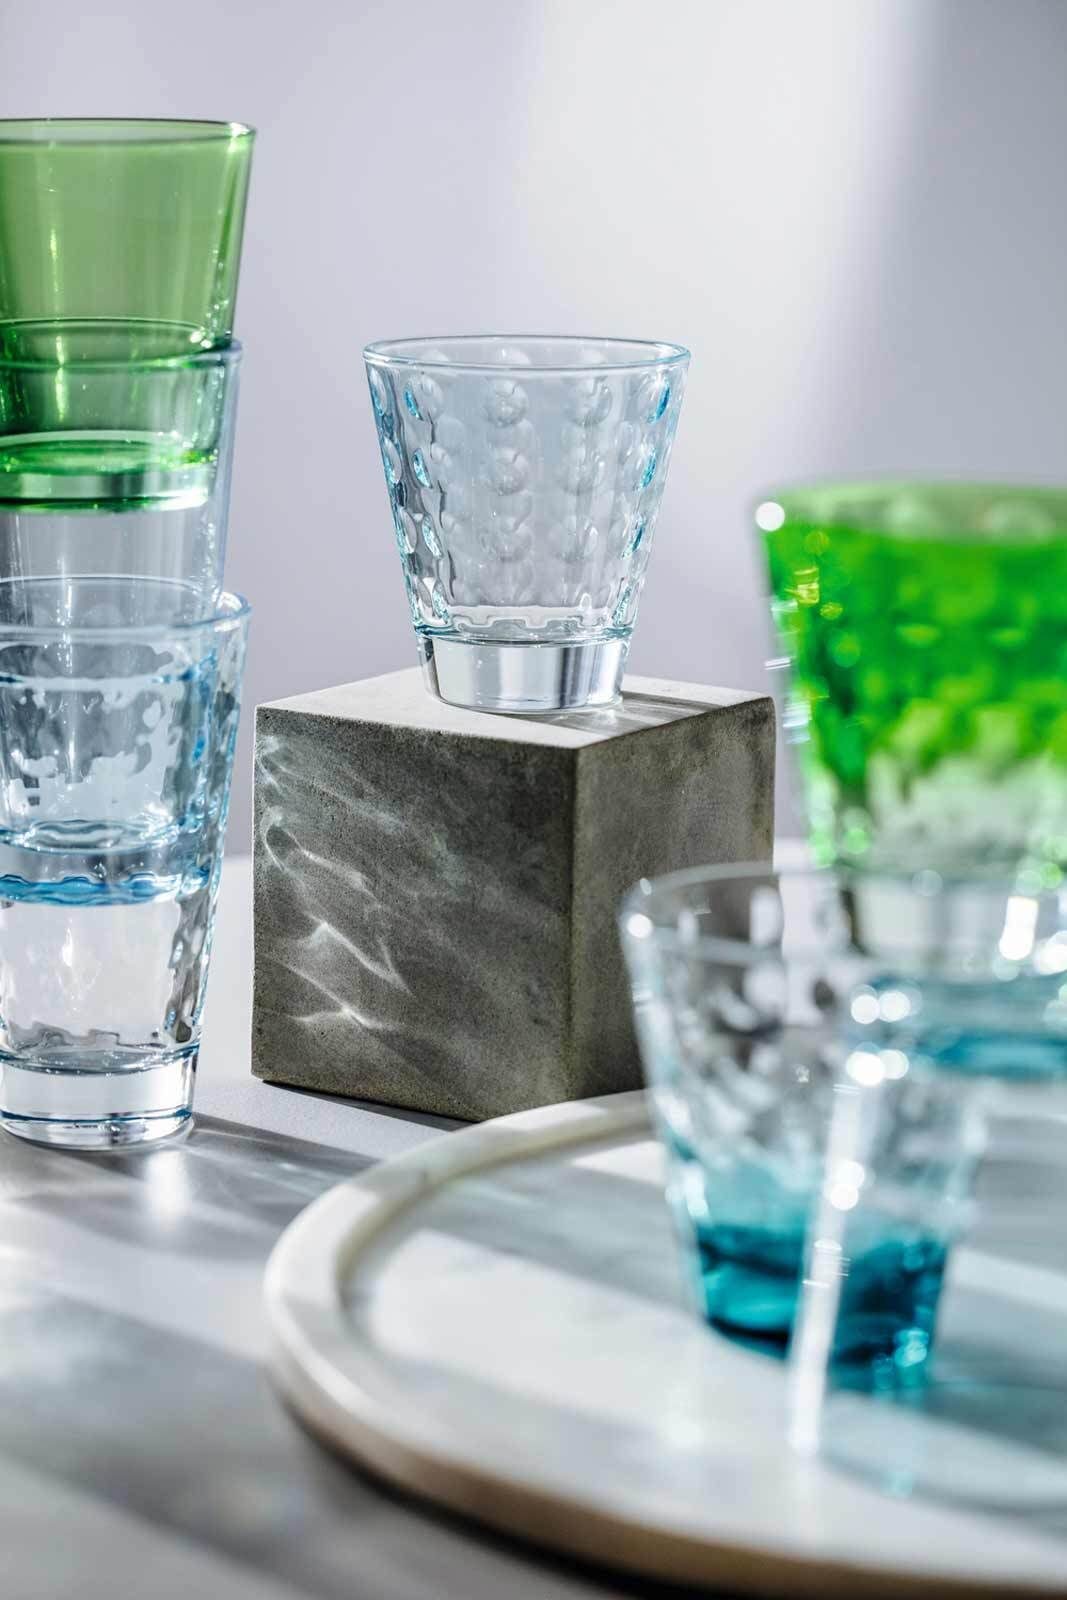 ml 215 6er Glas grün Set, LEONARDO Trinkgläser Optic Glas